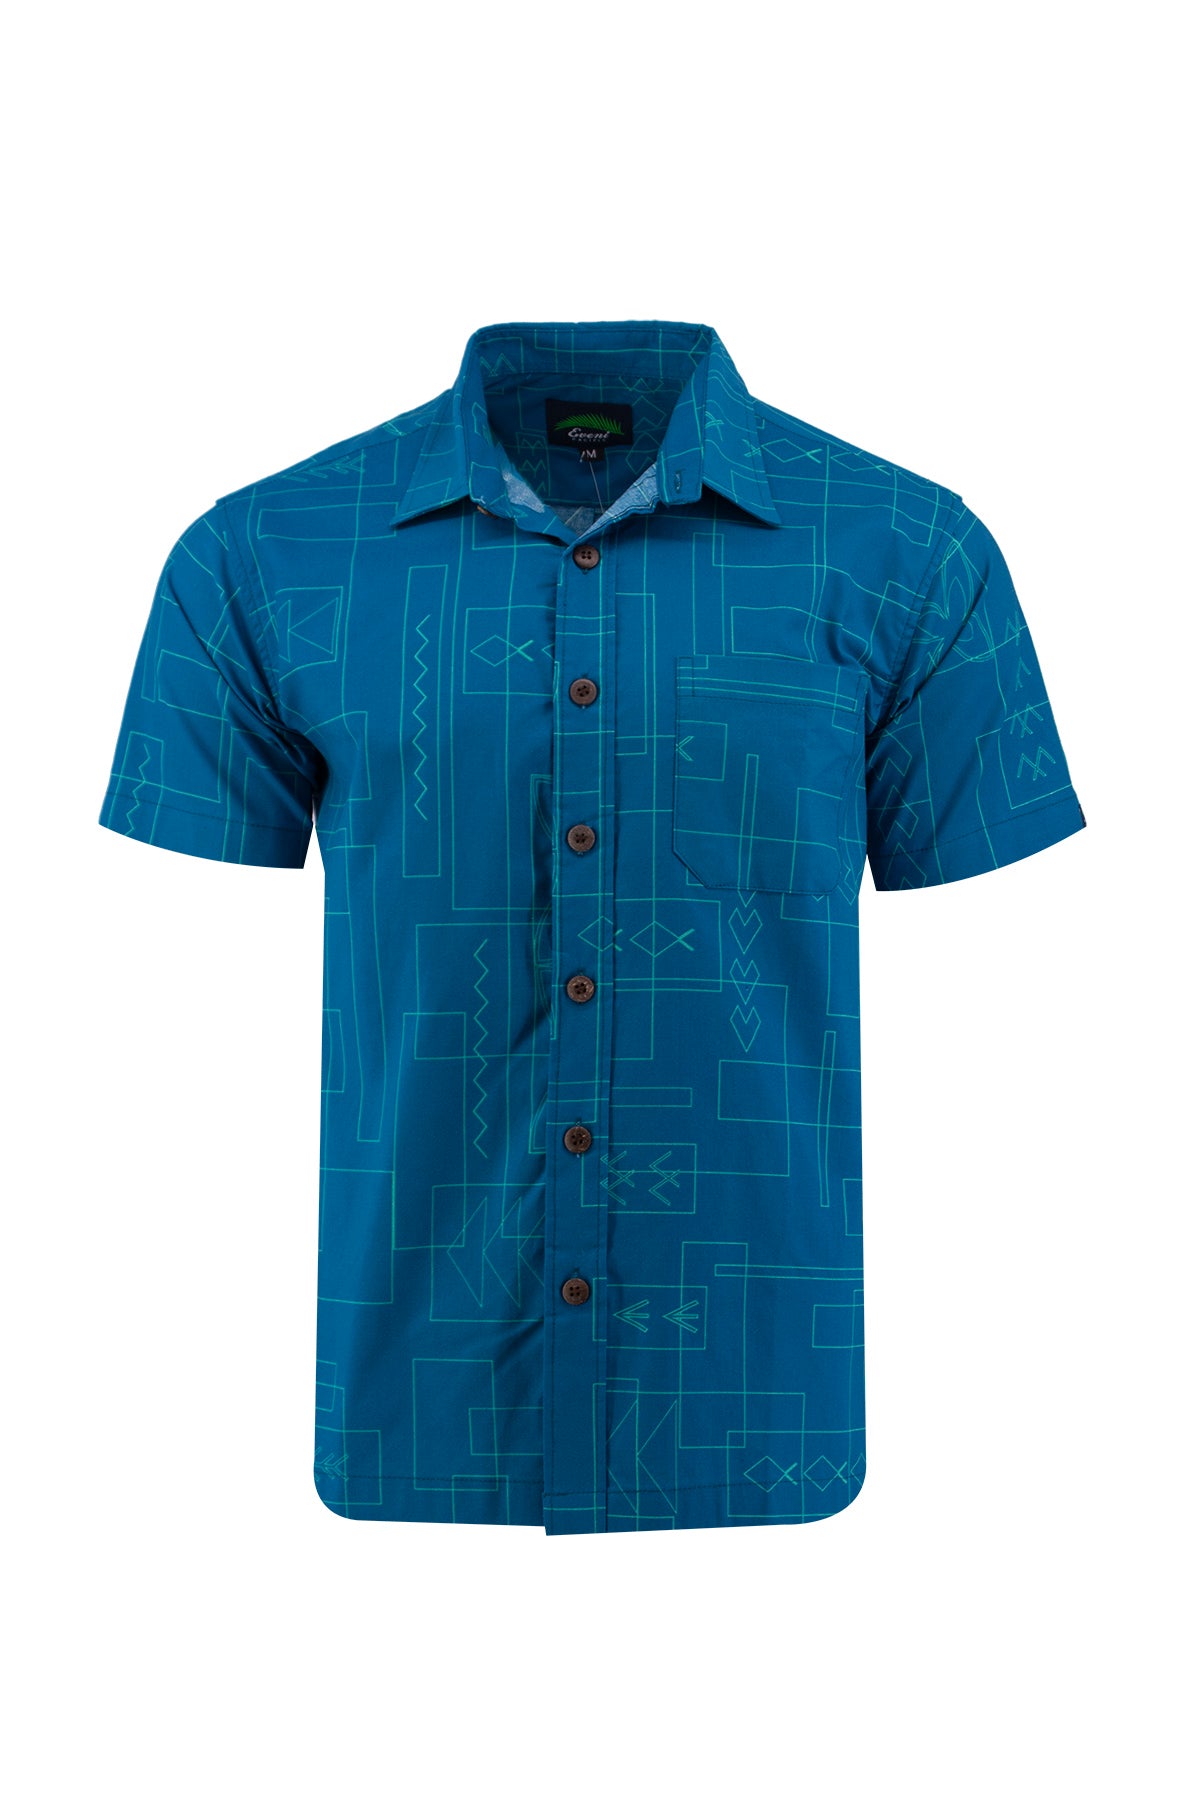 Eveni Pacific Men's Classic Shirt - MINTLEAF BLUE